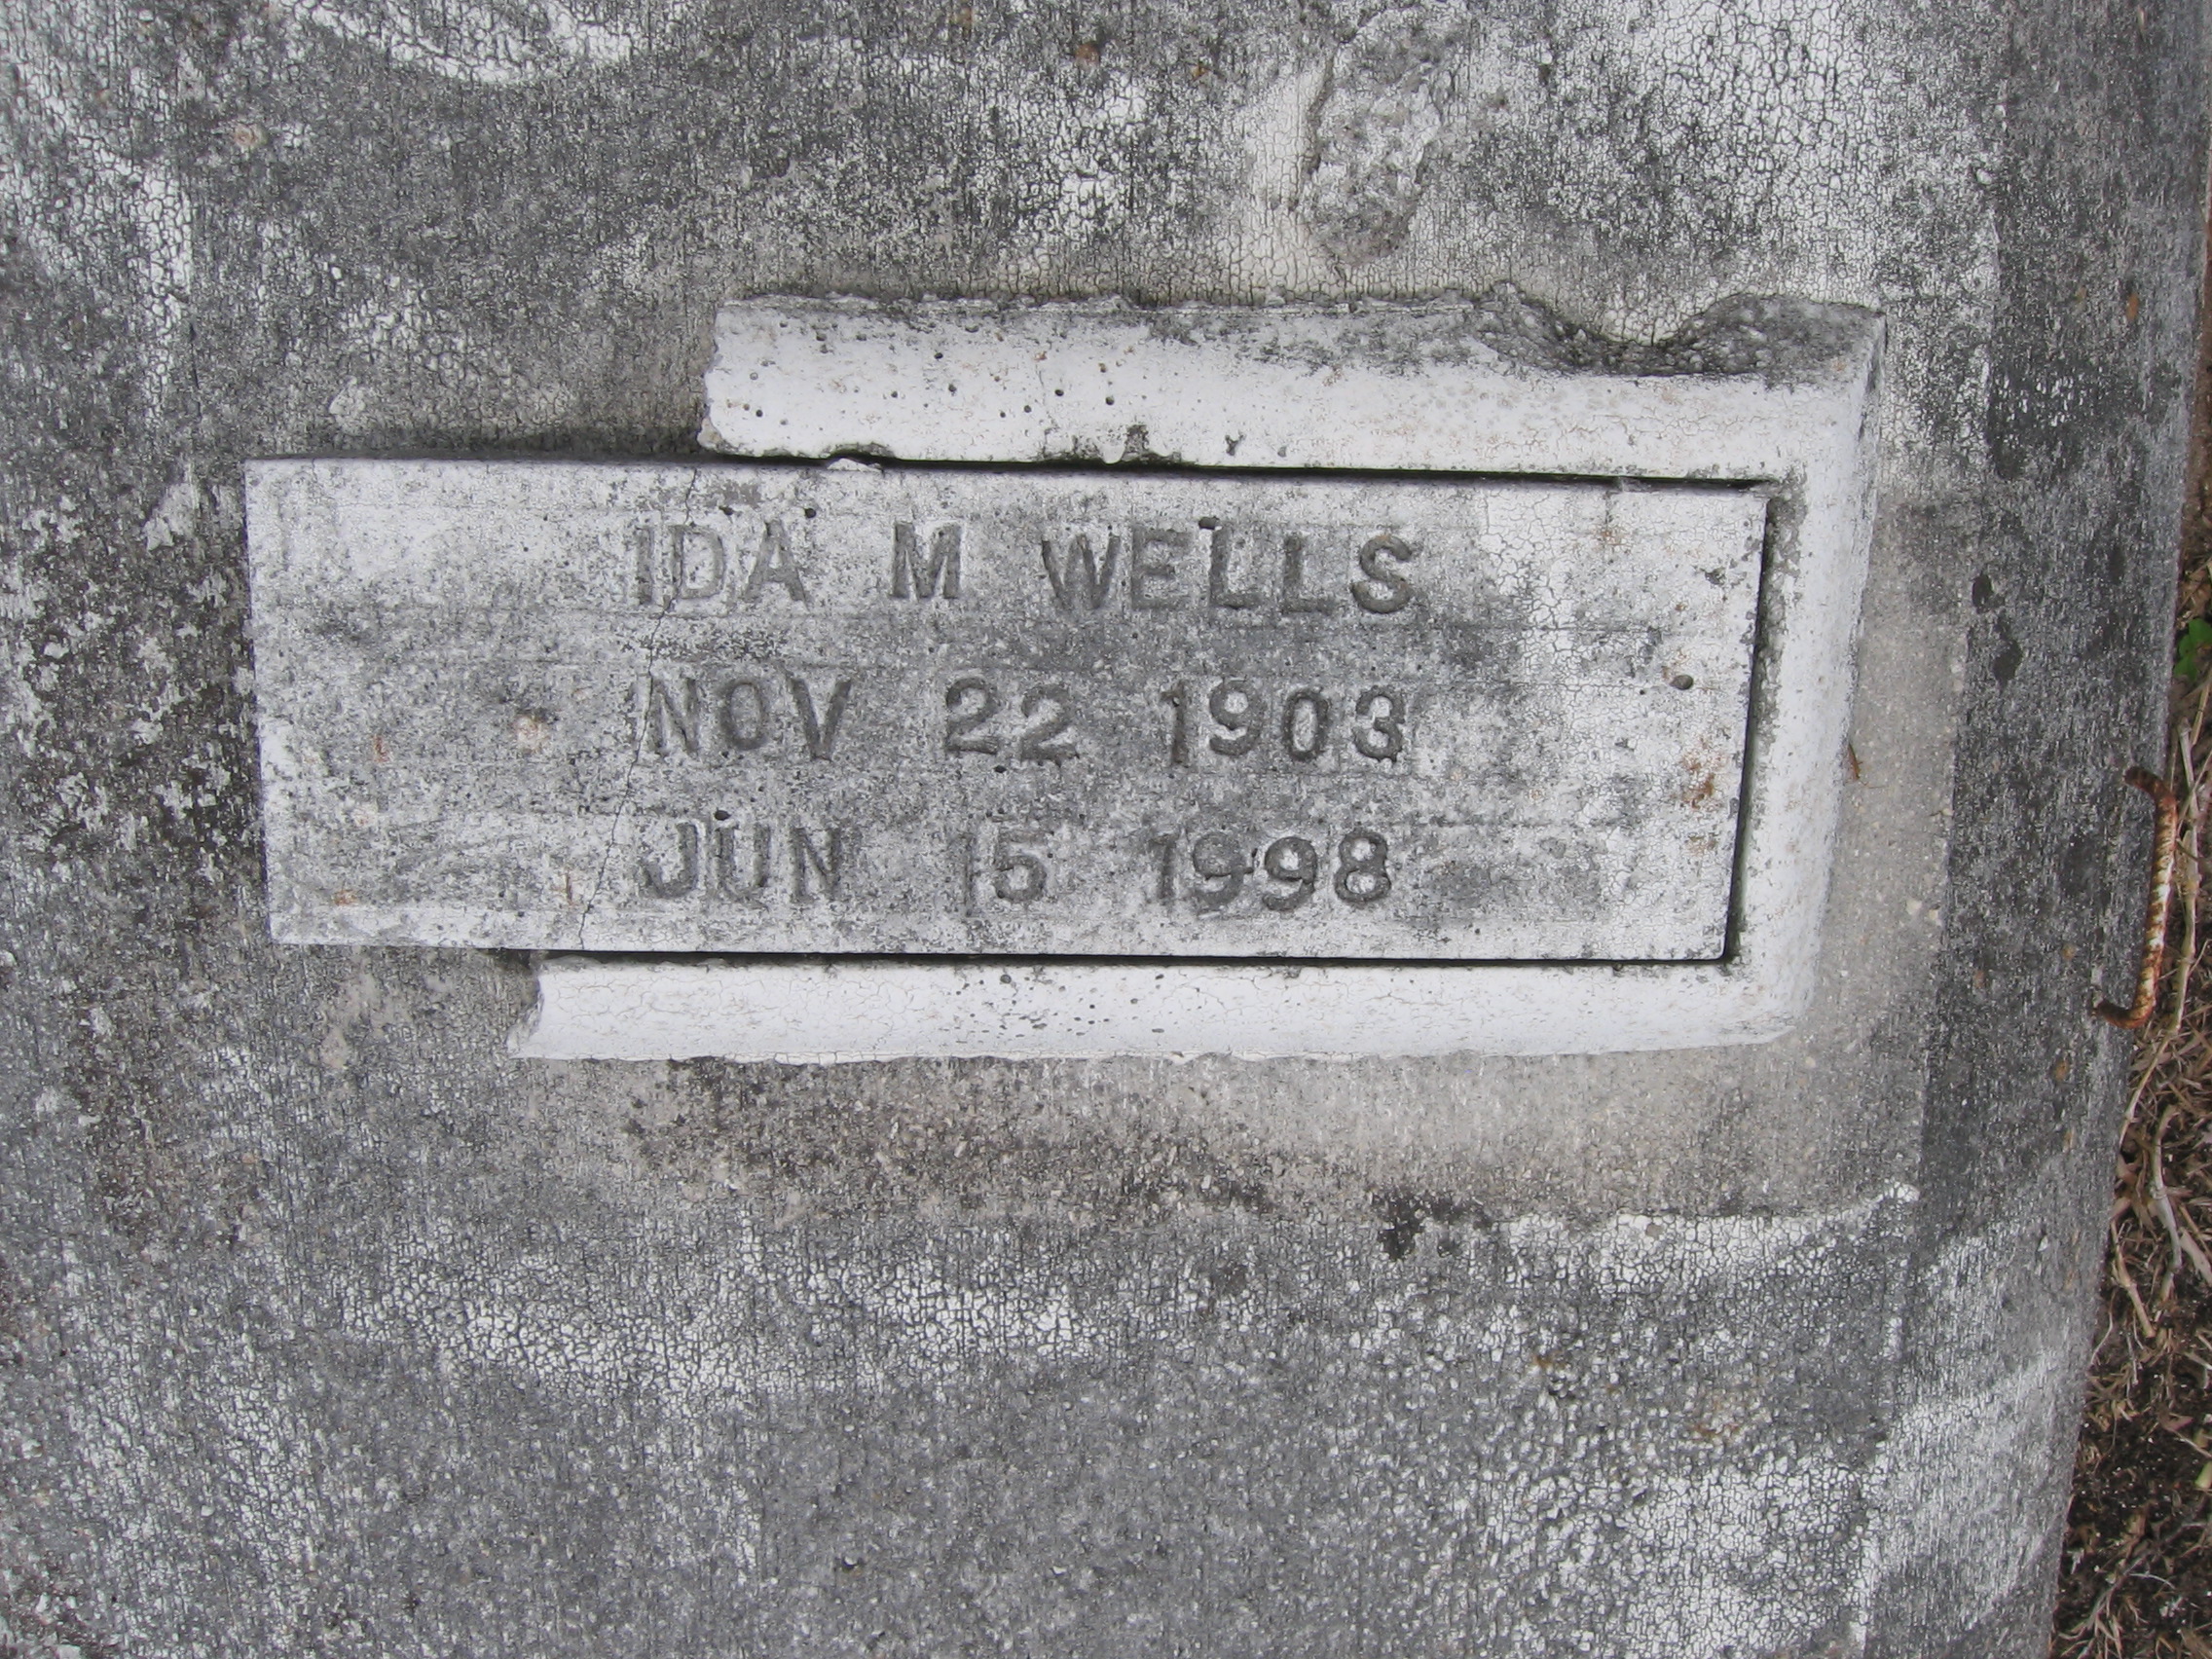 Ida M Wells